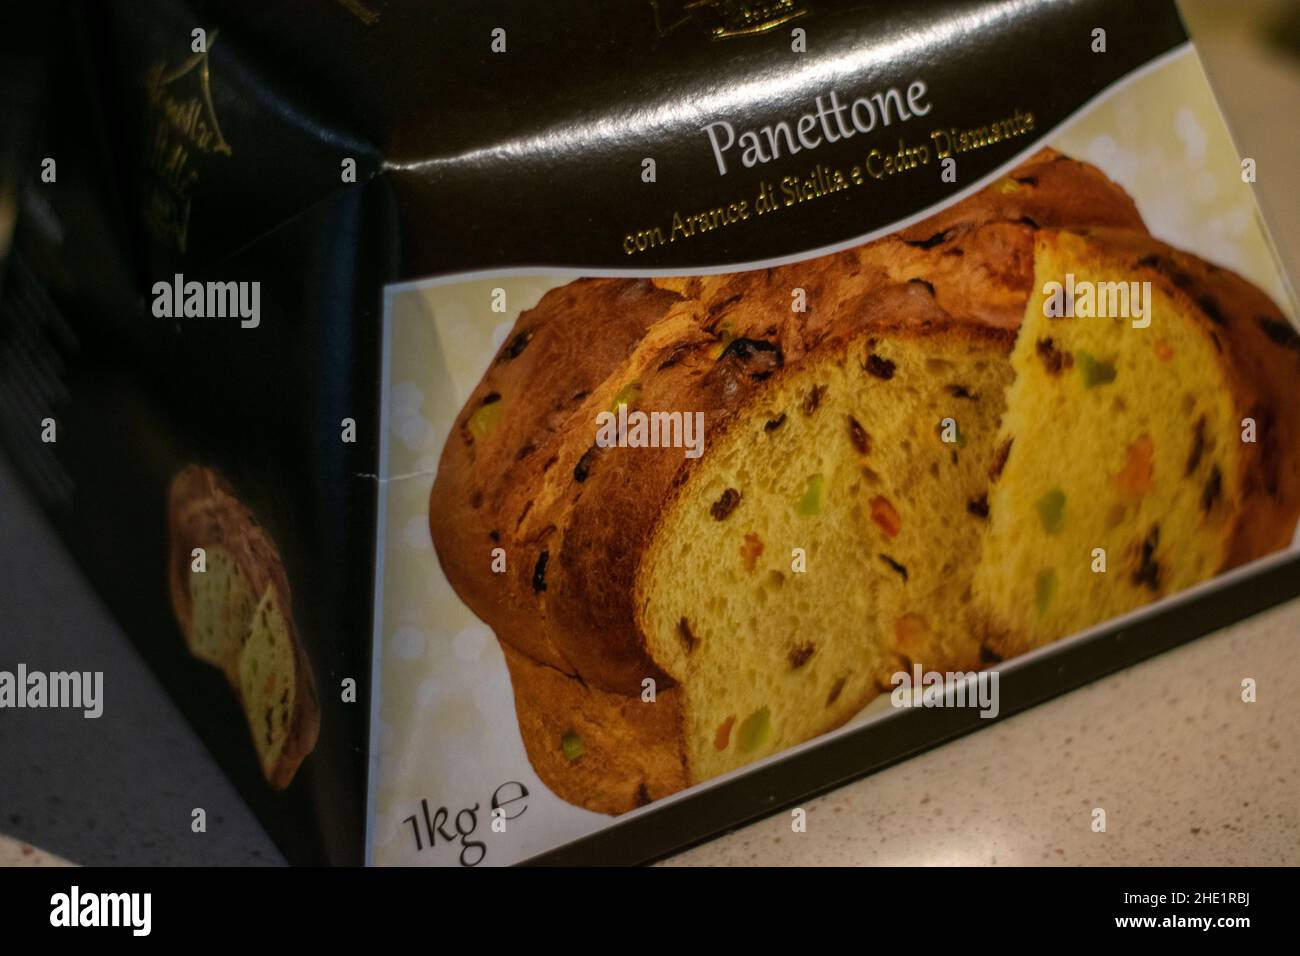 Panettone Art von süßem Brot ursprünglich aus Mailand, in der Regel zubereitet und genossen für Weihnachten und Neujahr. Stockfoto